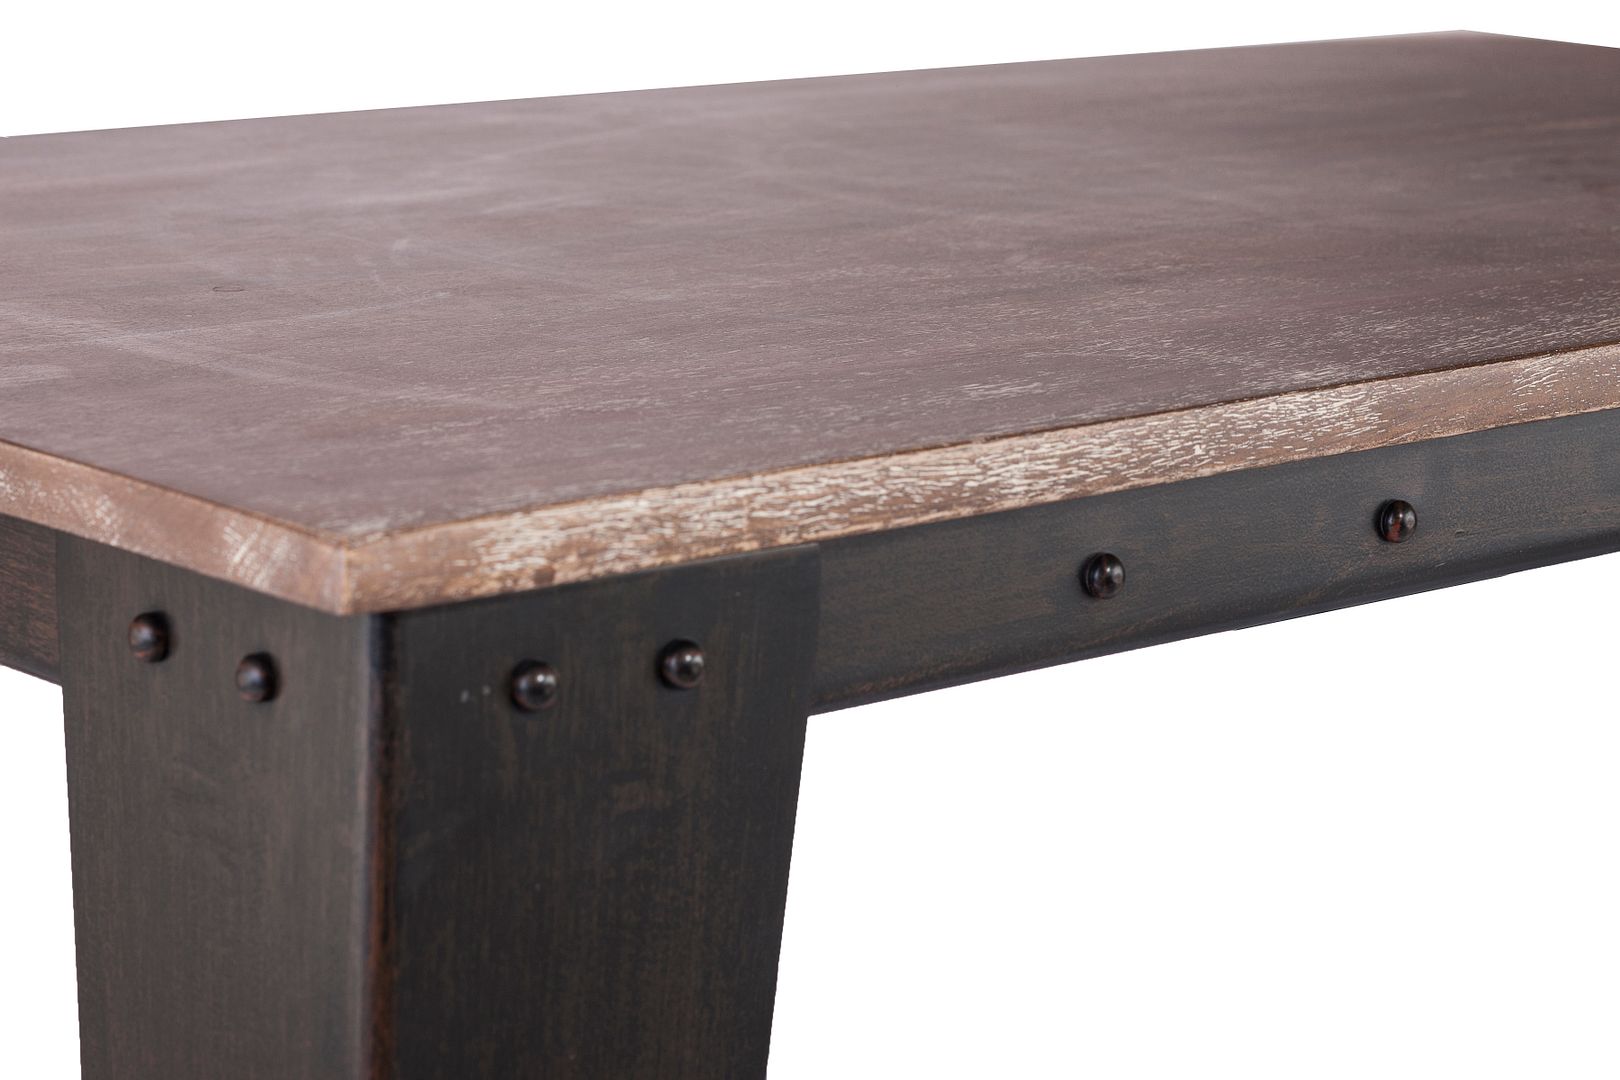 Autar Industrial Style Wood Coffee Table on Wheels - Brown & Rustic - Notbrand